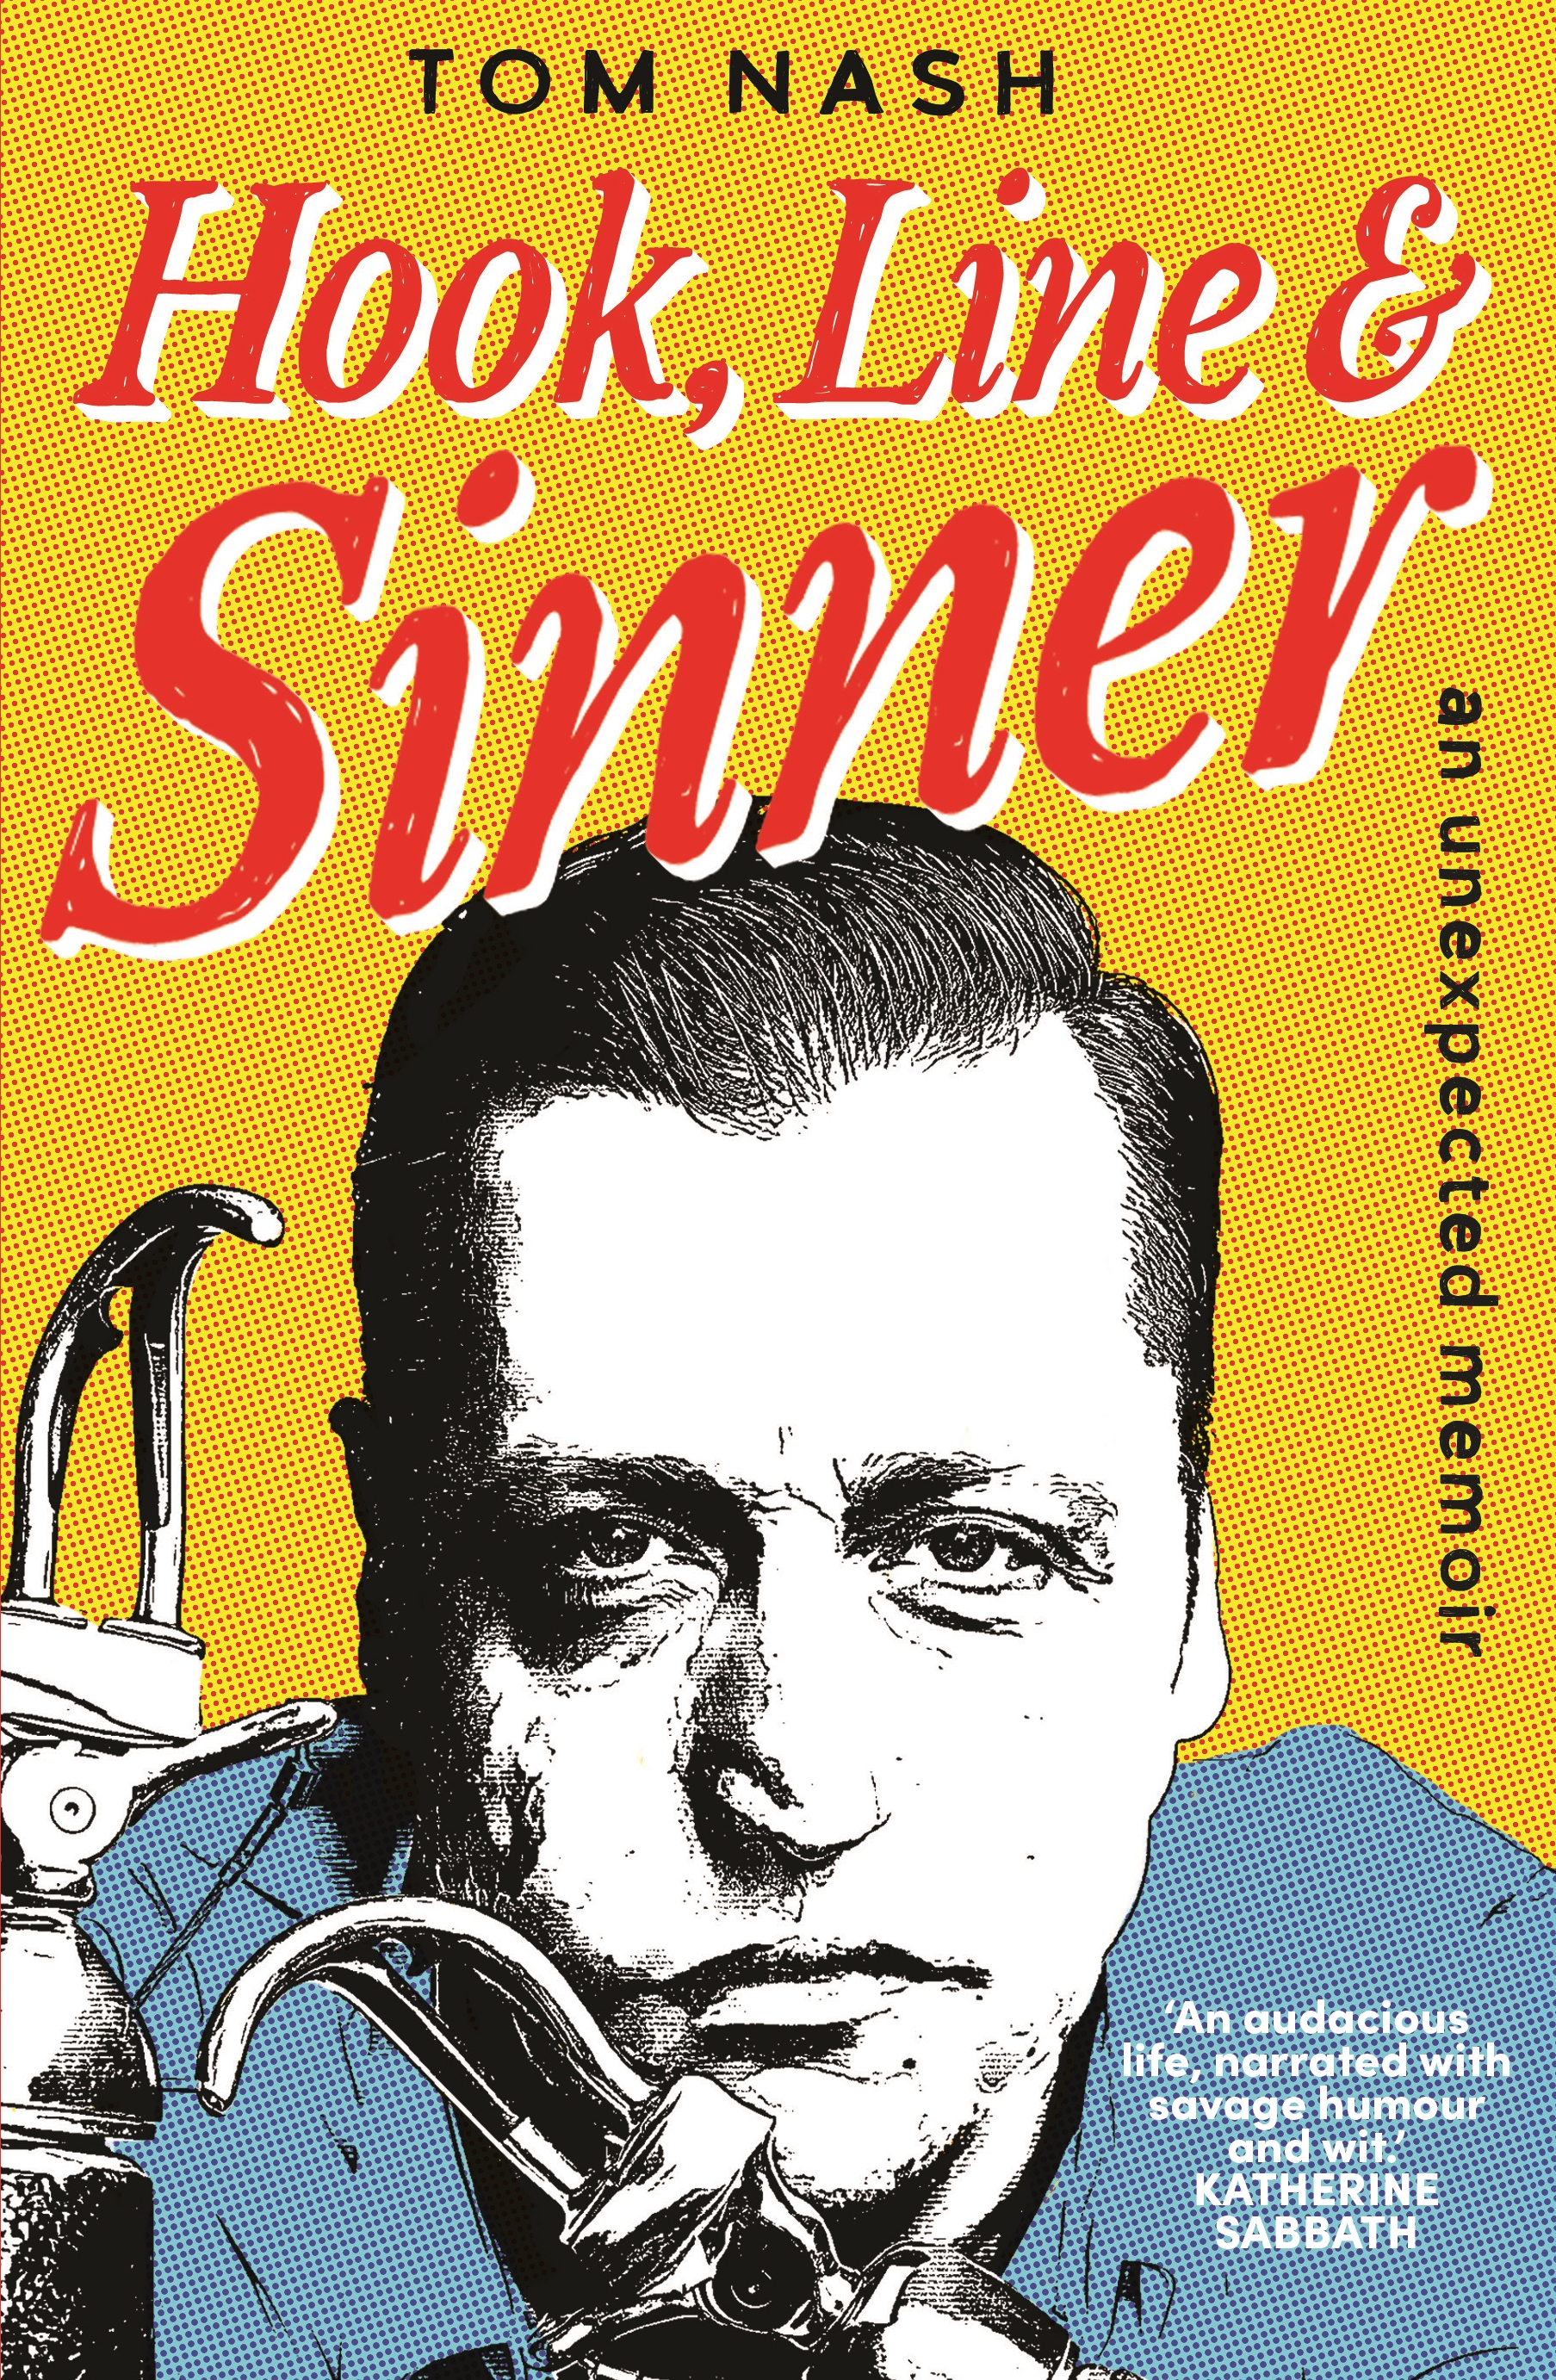 Hook, Line and Sinner by Tom Nash - Penguin Books Australia